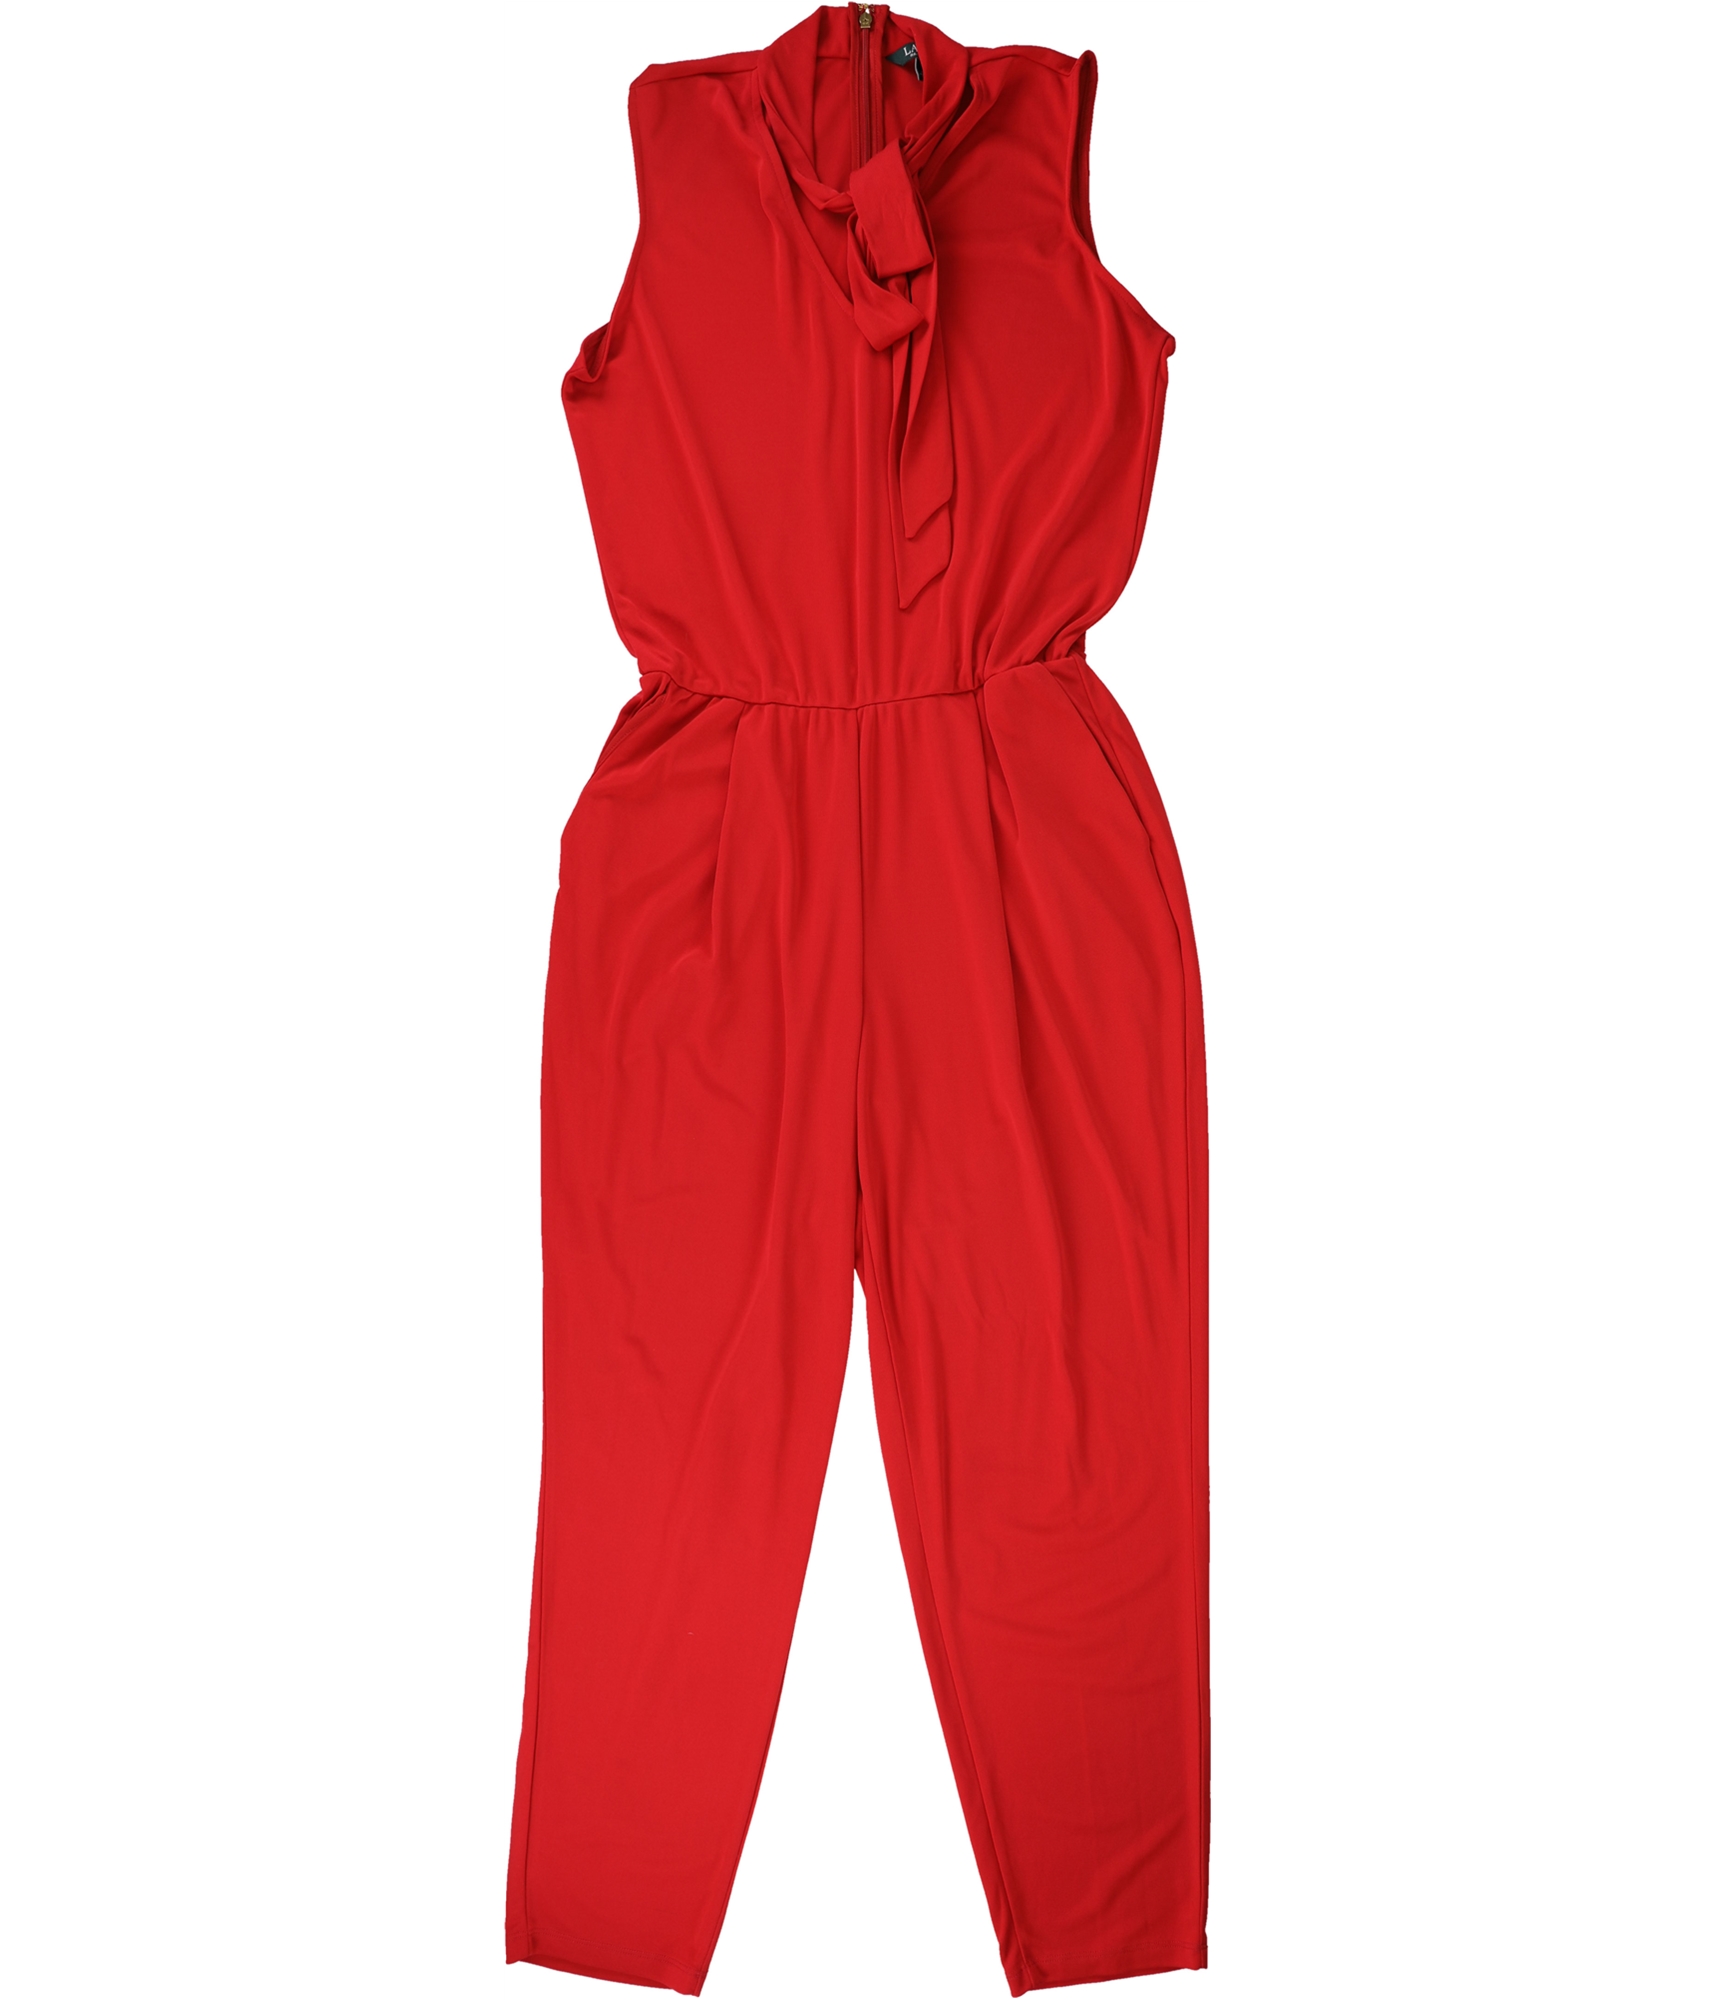 Ralph Lauren Womens Tie Neck Jumpsuit, Red, Small | eBay